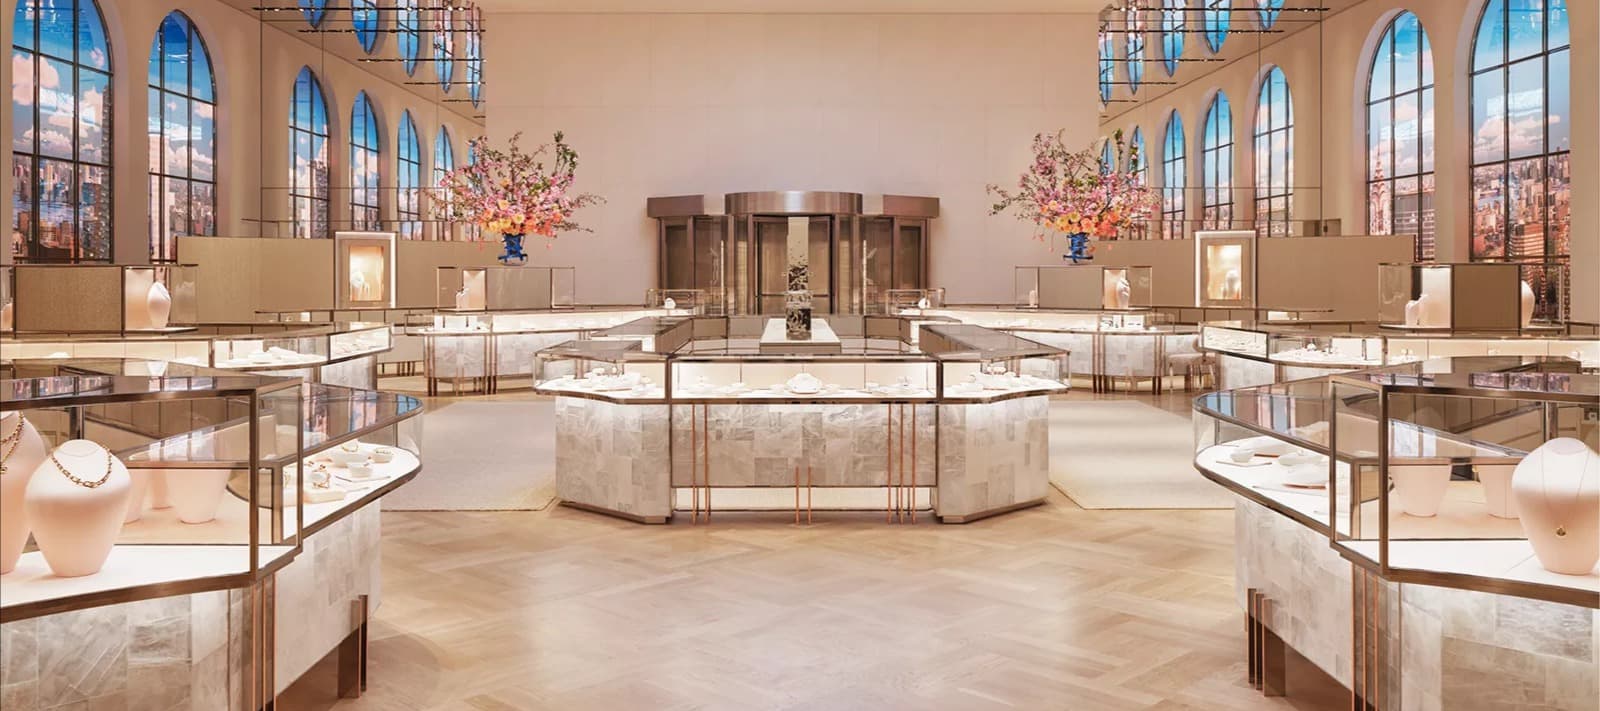 Фото новости: "Tiffany & Co открыла флагманский магазин в Нью-Йорке после реставрации"